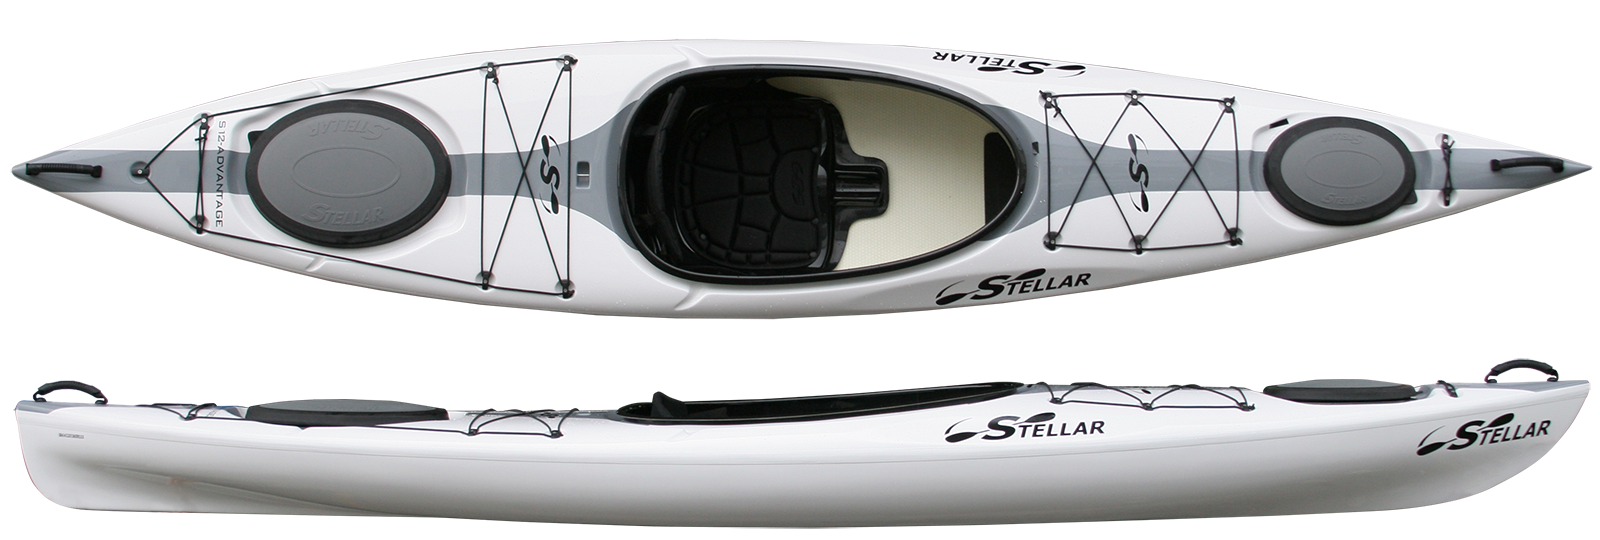 Kayaks: S12 by Stellar Kayaks - Image 4709